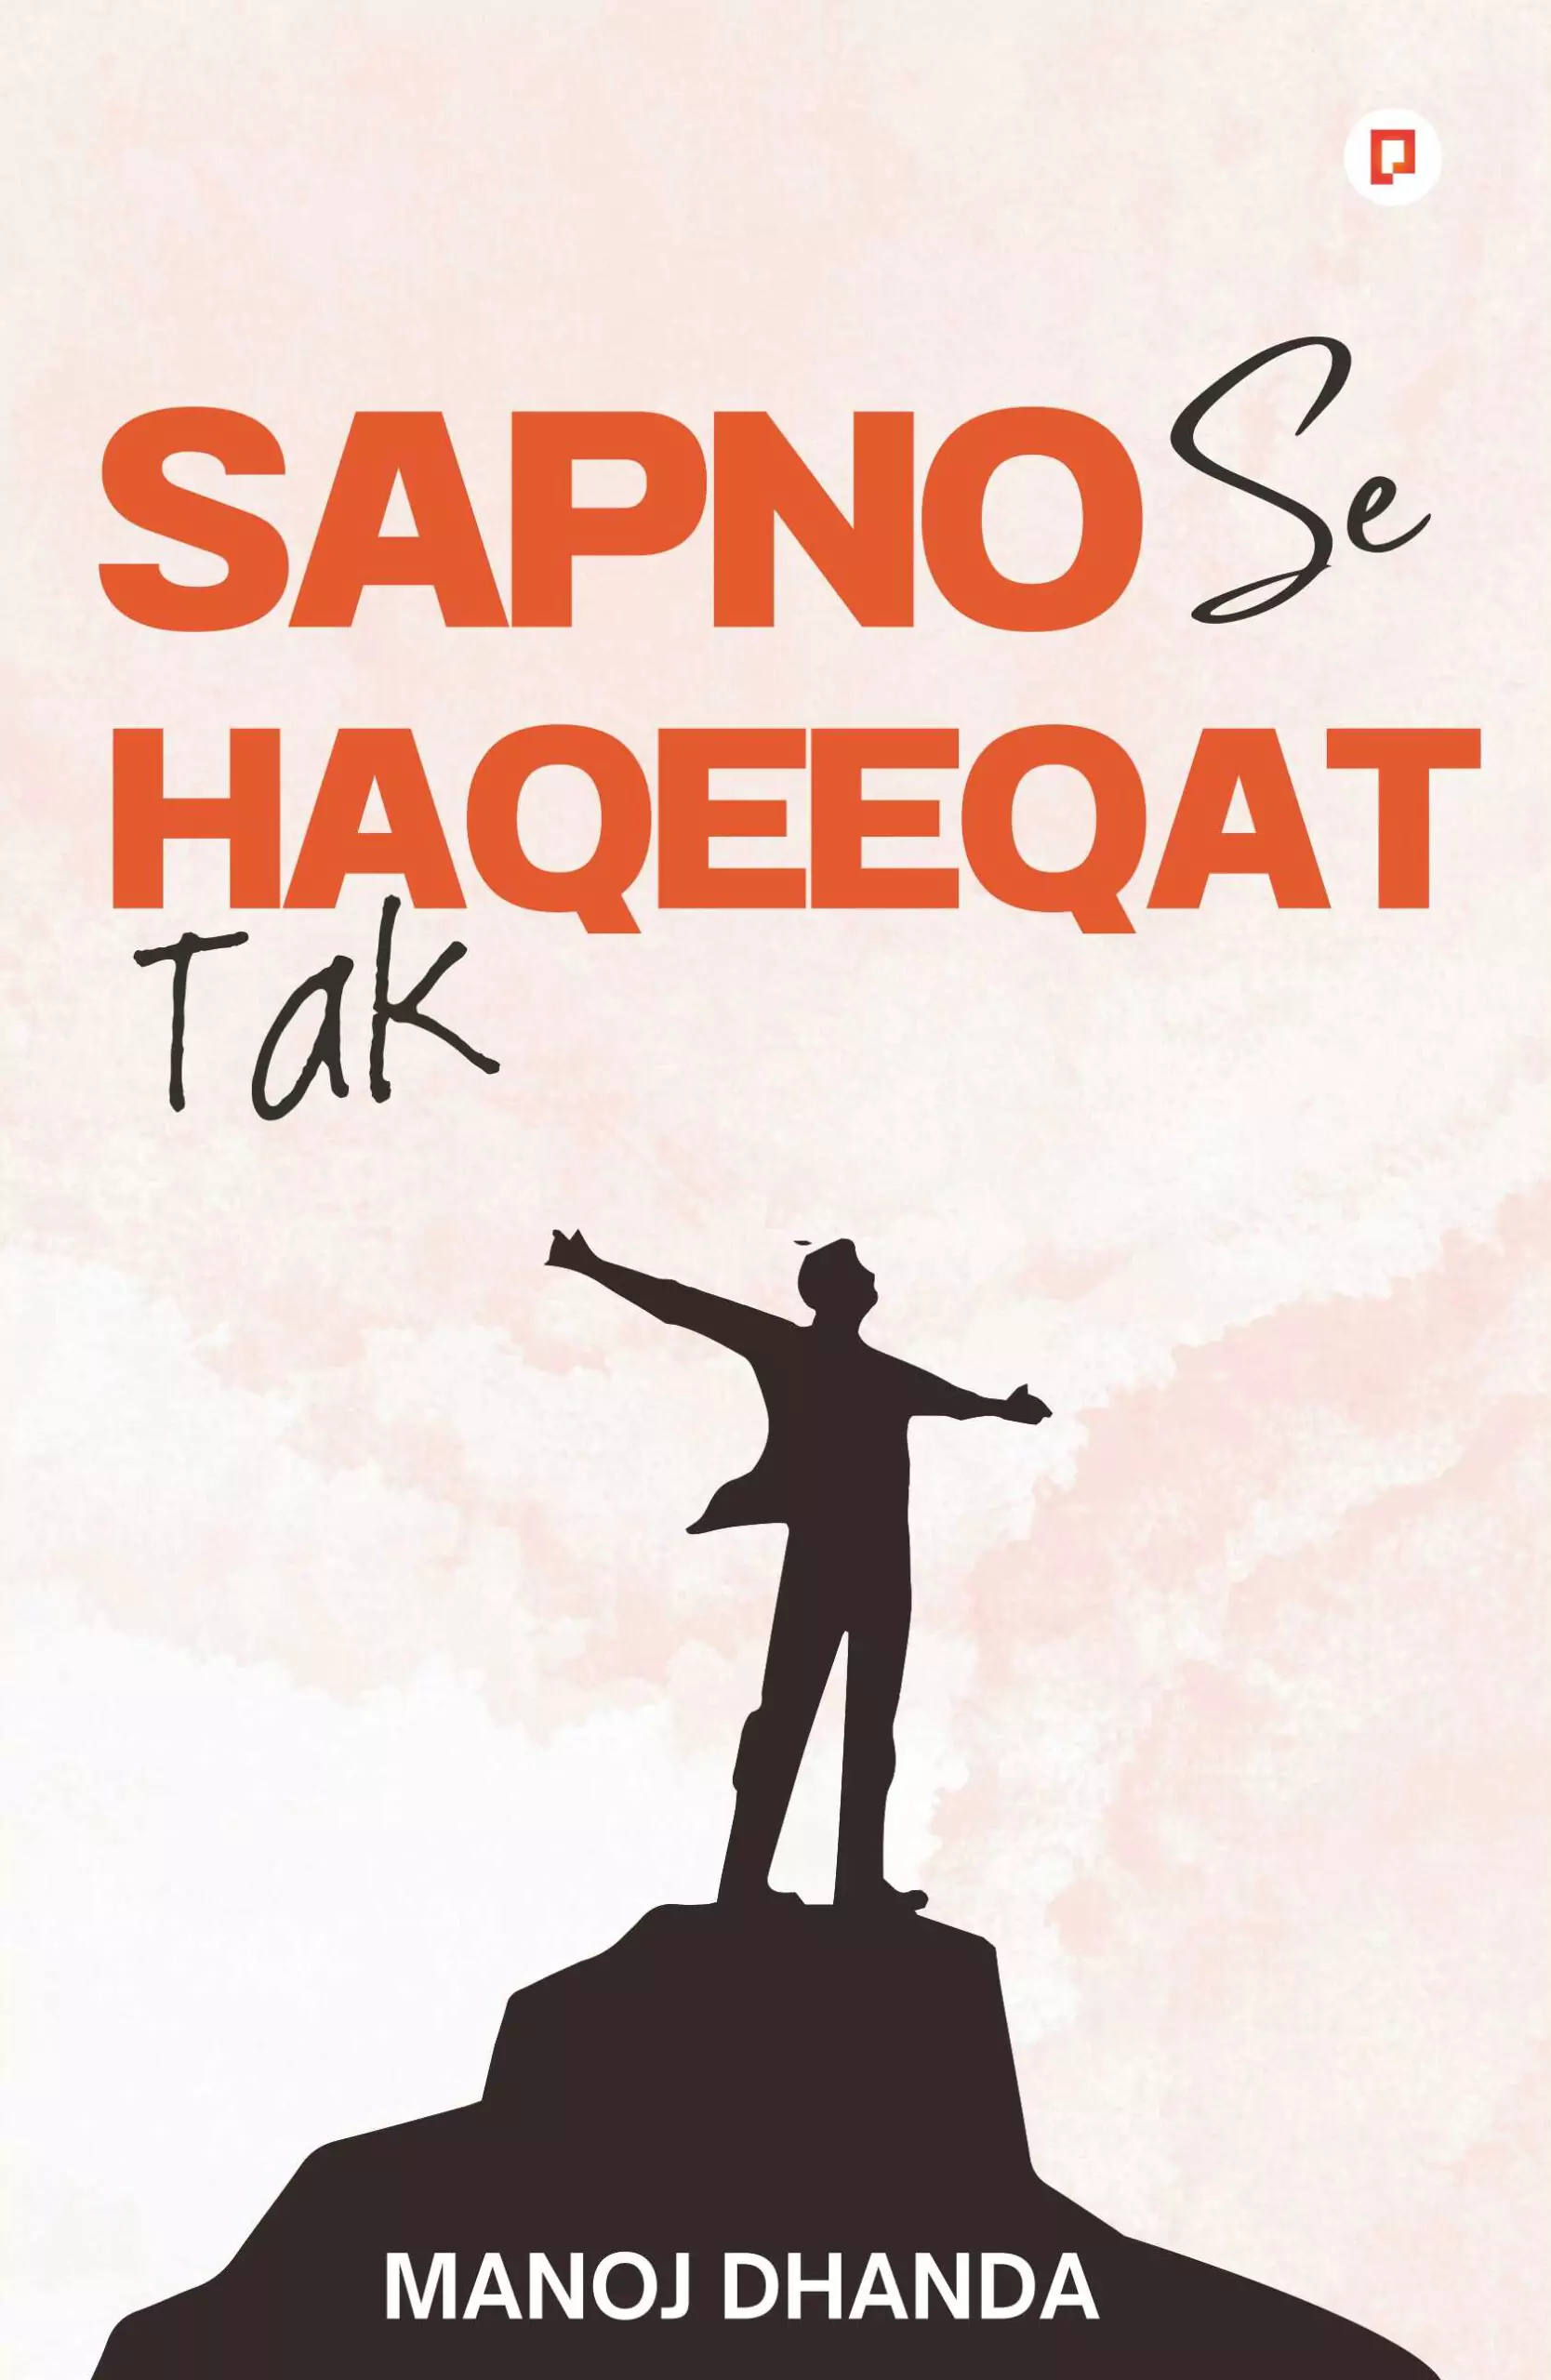 Sapno se Haqeeqat Tak Book by pendownpress